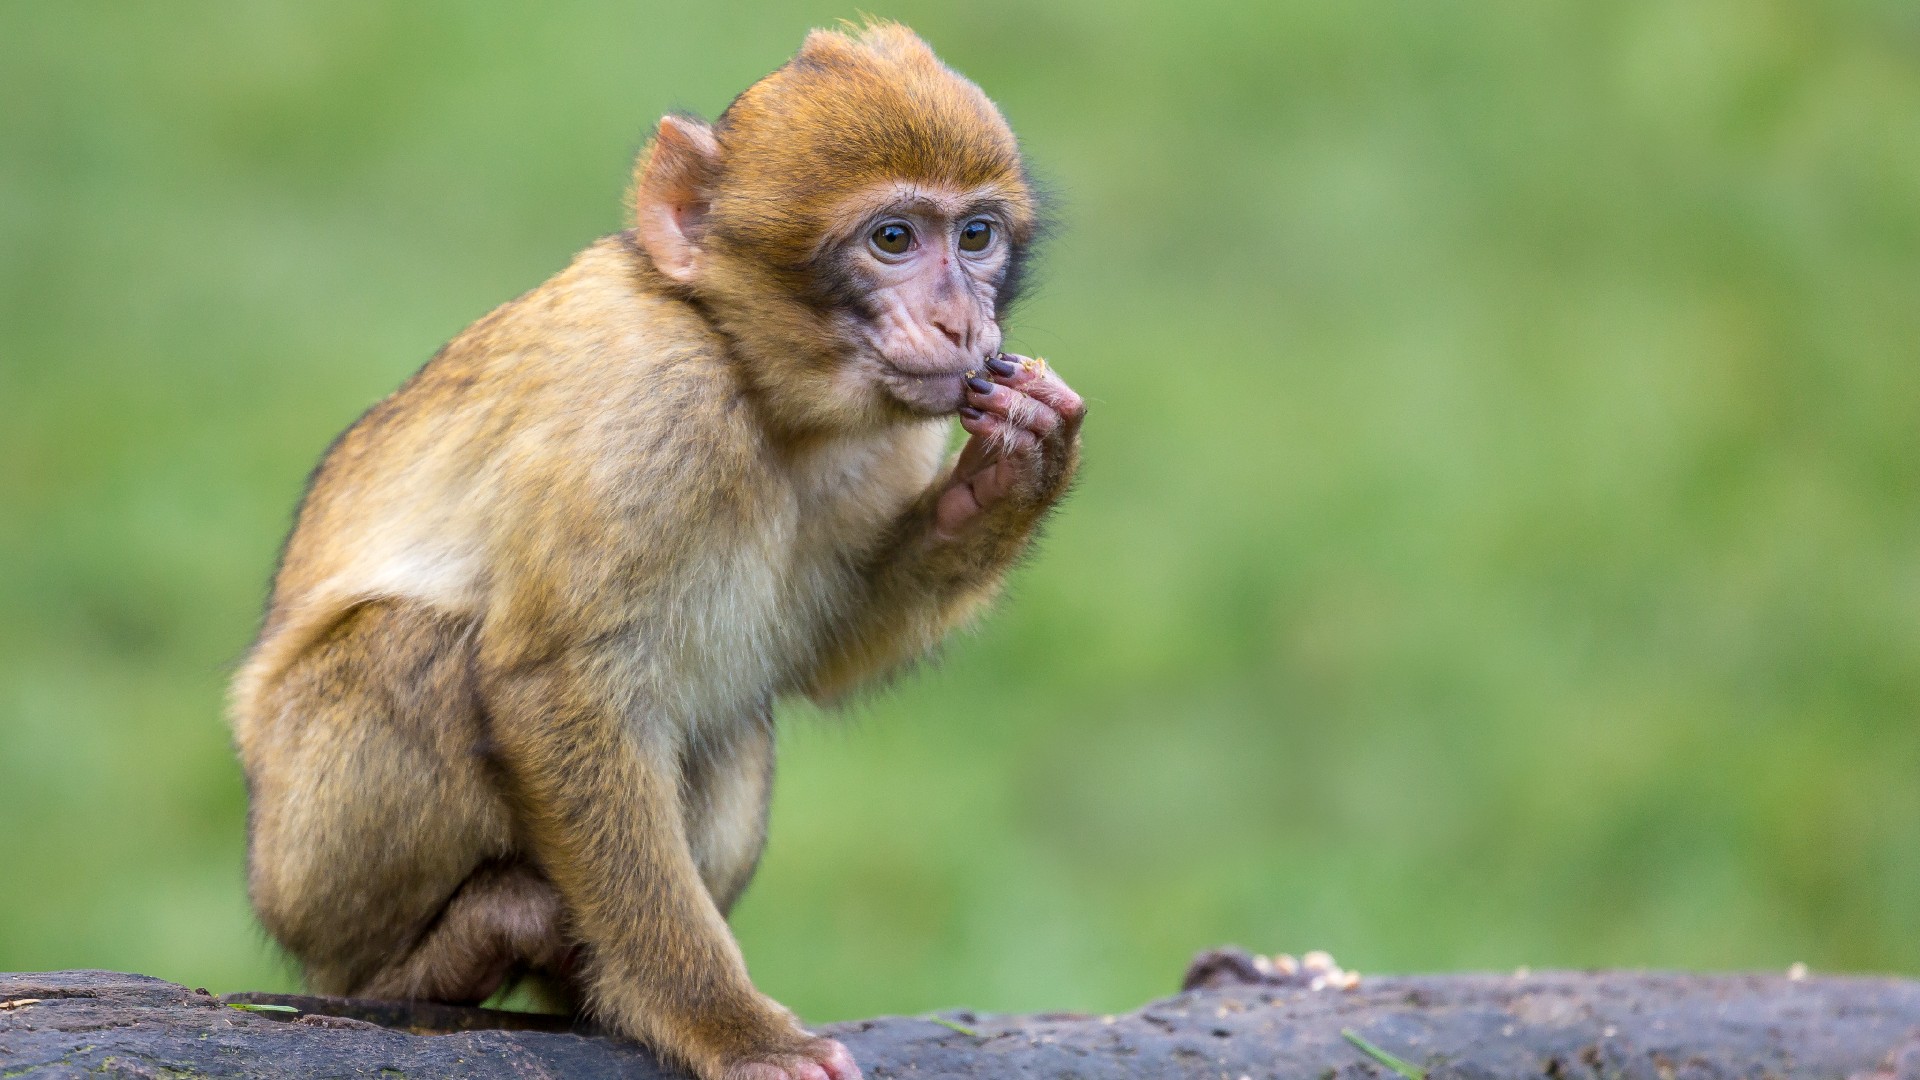 Modelo colombiana es acusada de maltrato animal tras darle cerveza a un mico